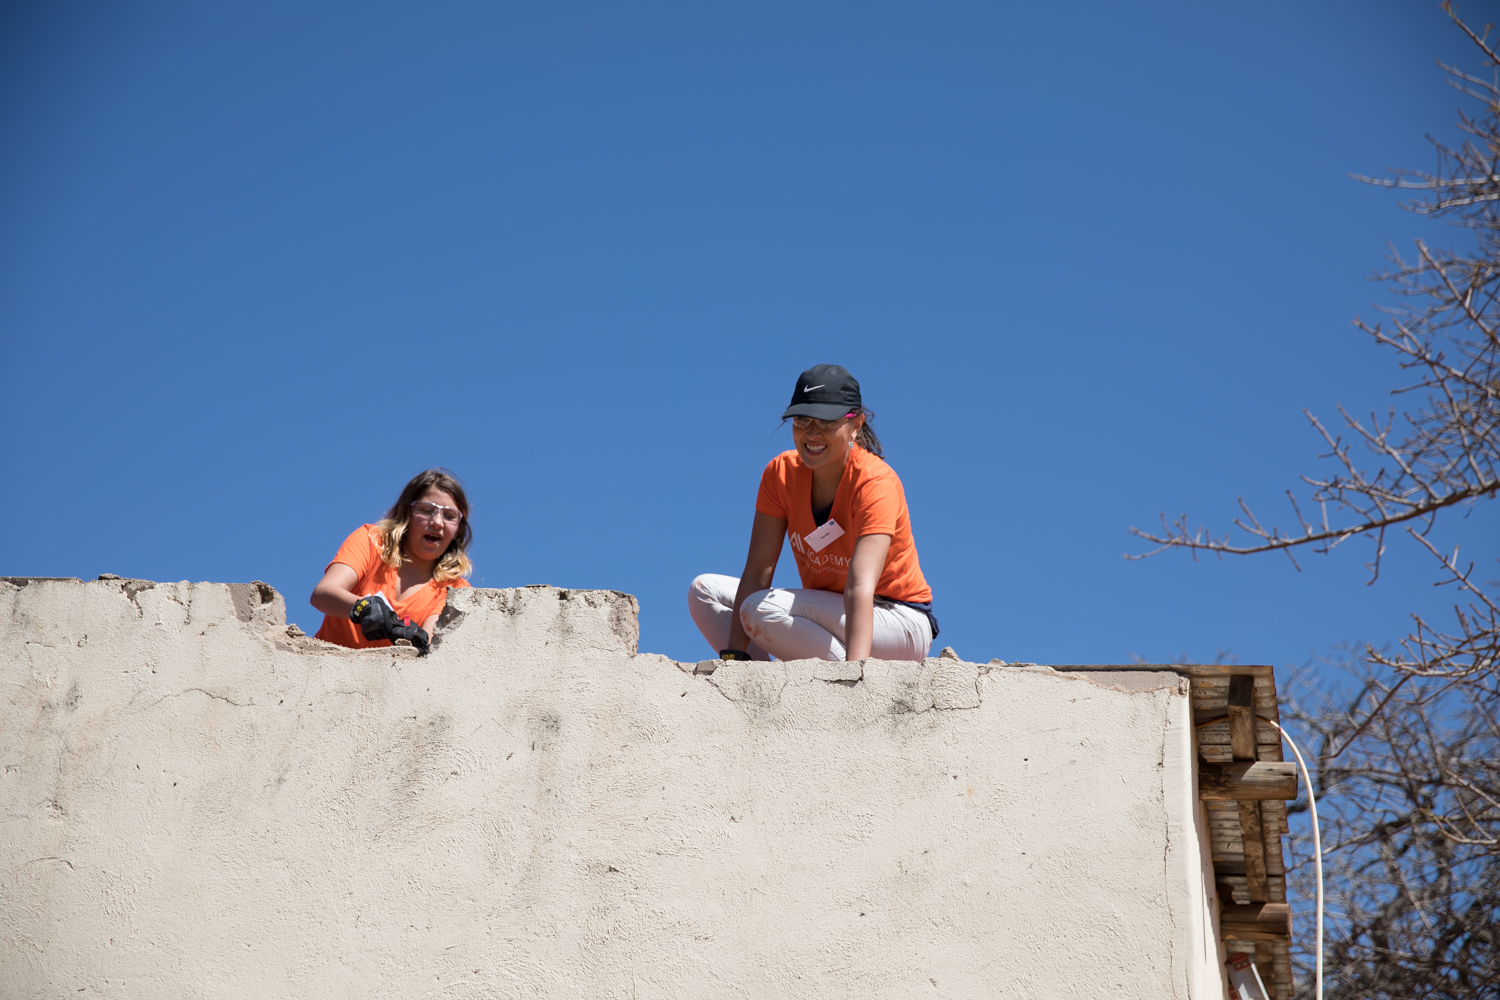 Charadie Finkle repairs a rooftop at The Makwetse School